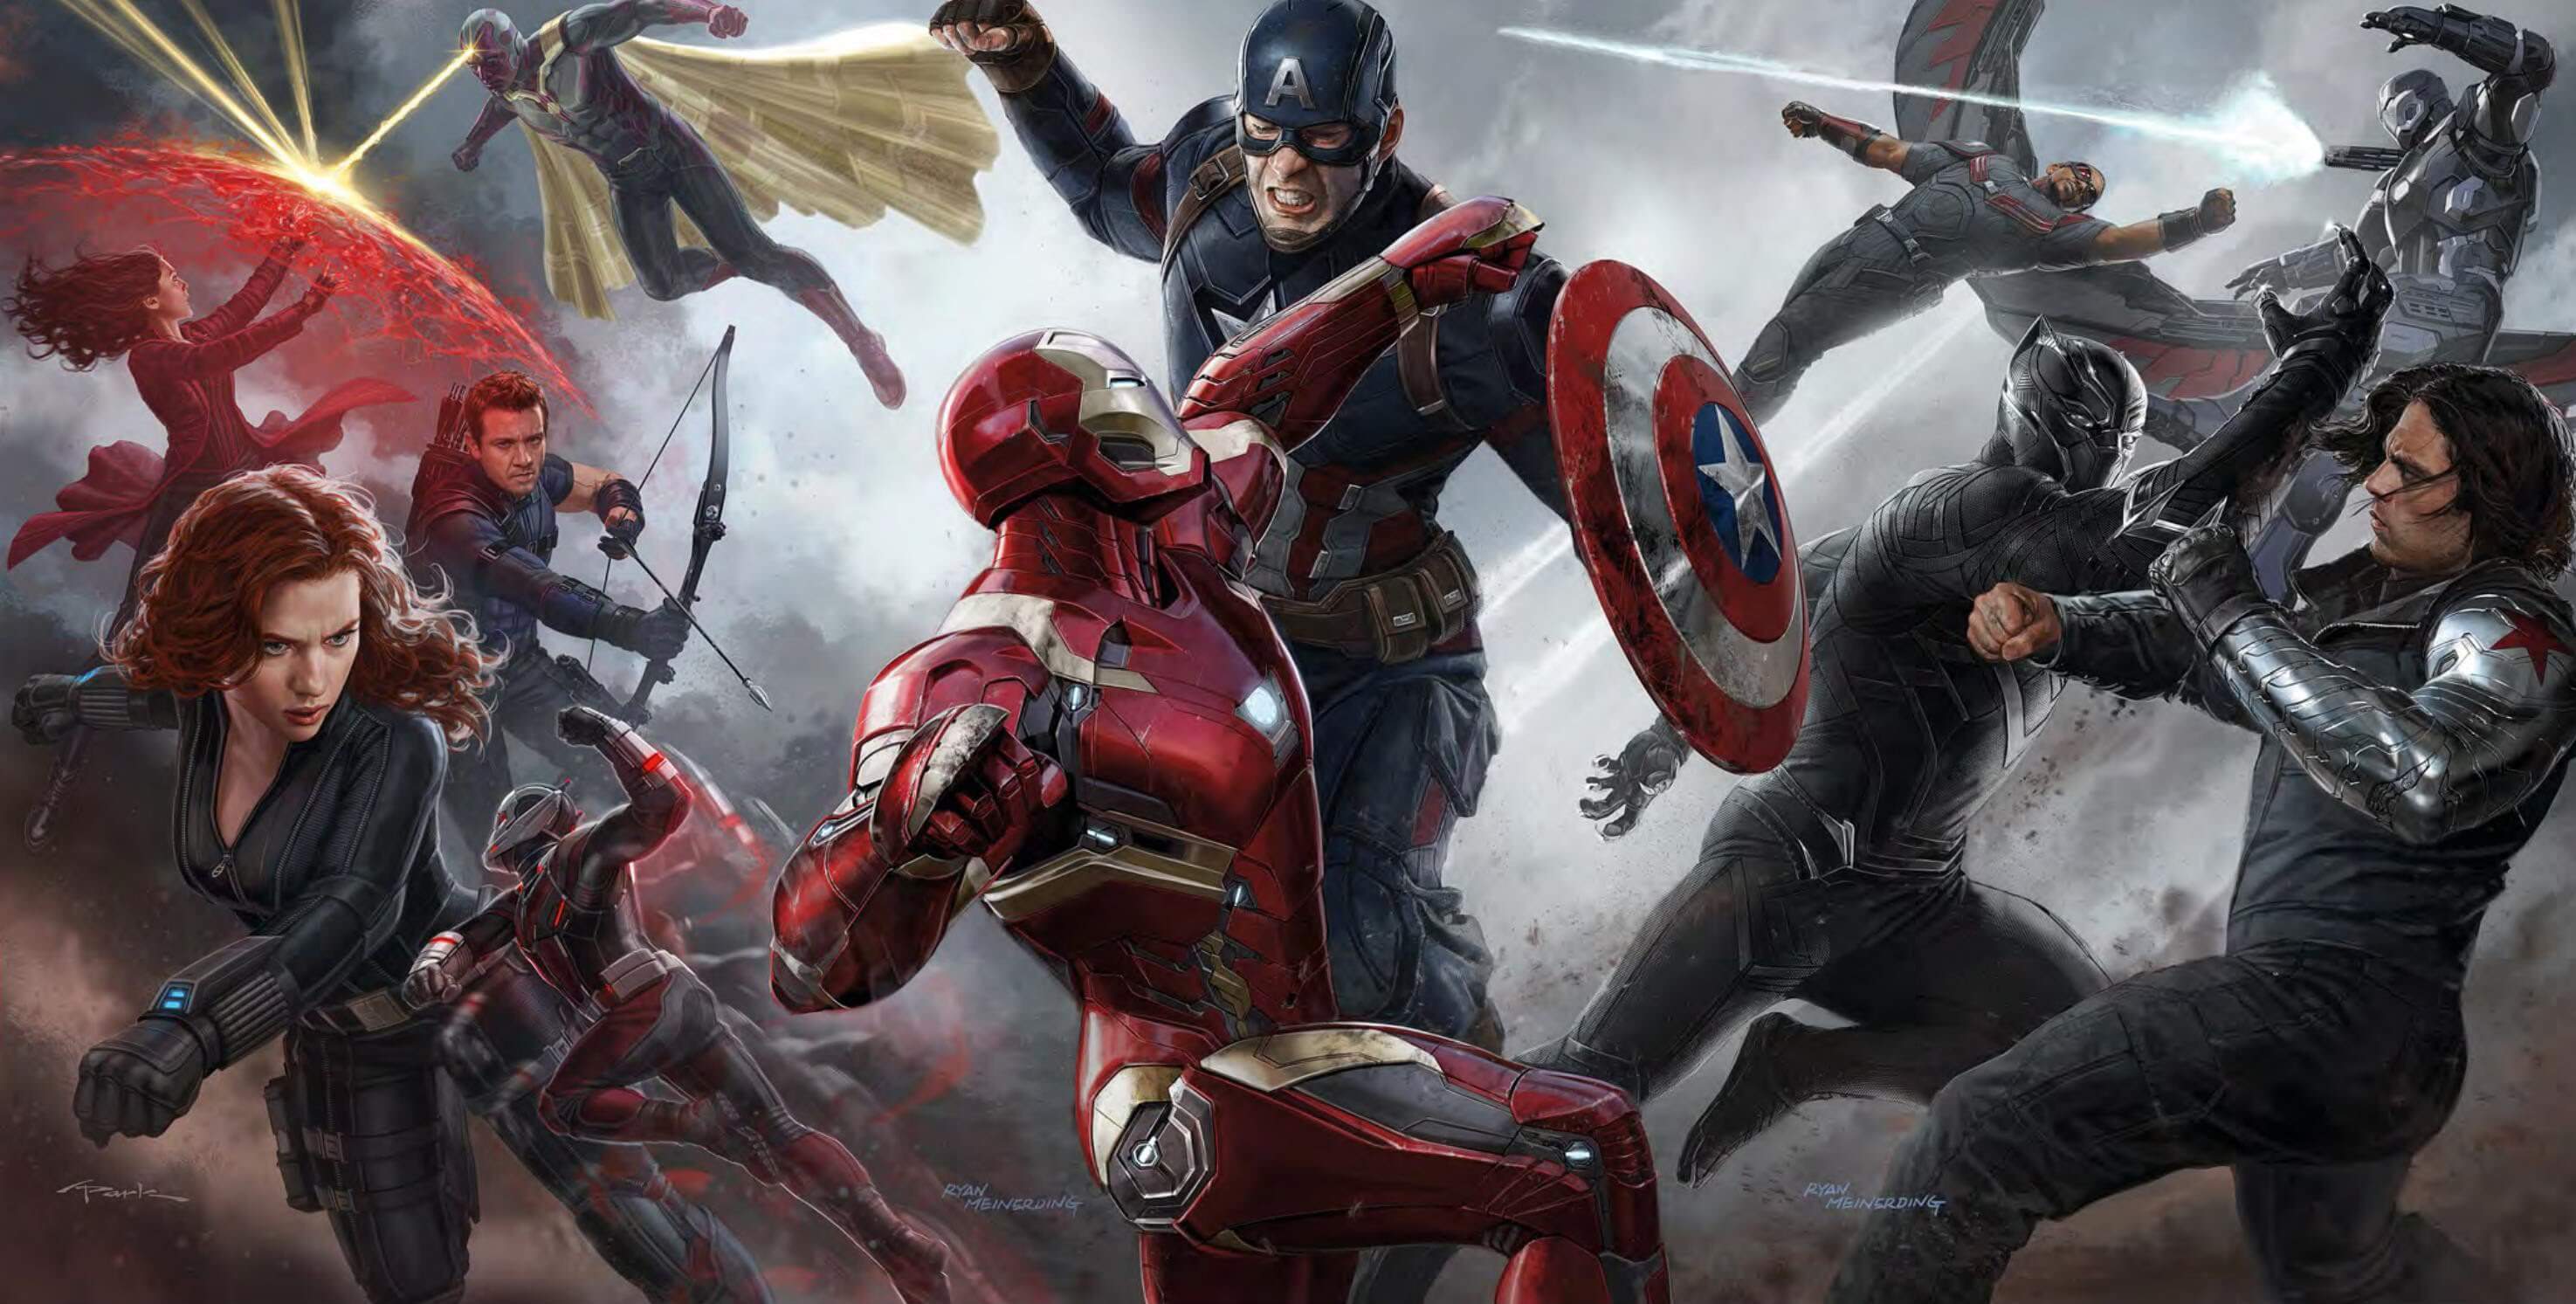 Marvel Heroes feuert alle Angestellten, schließt schon am Freitag